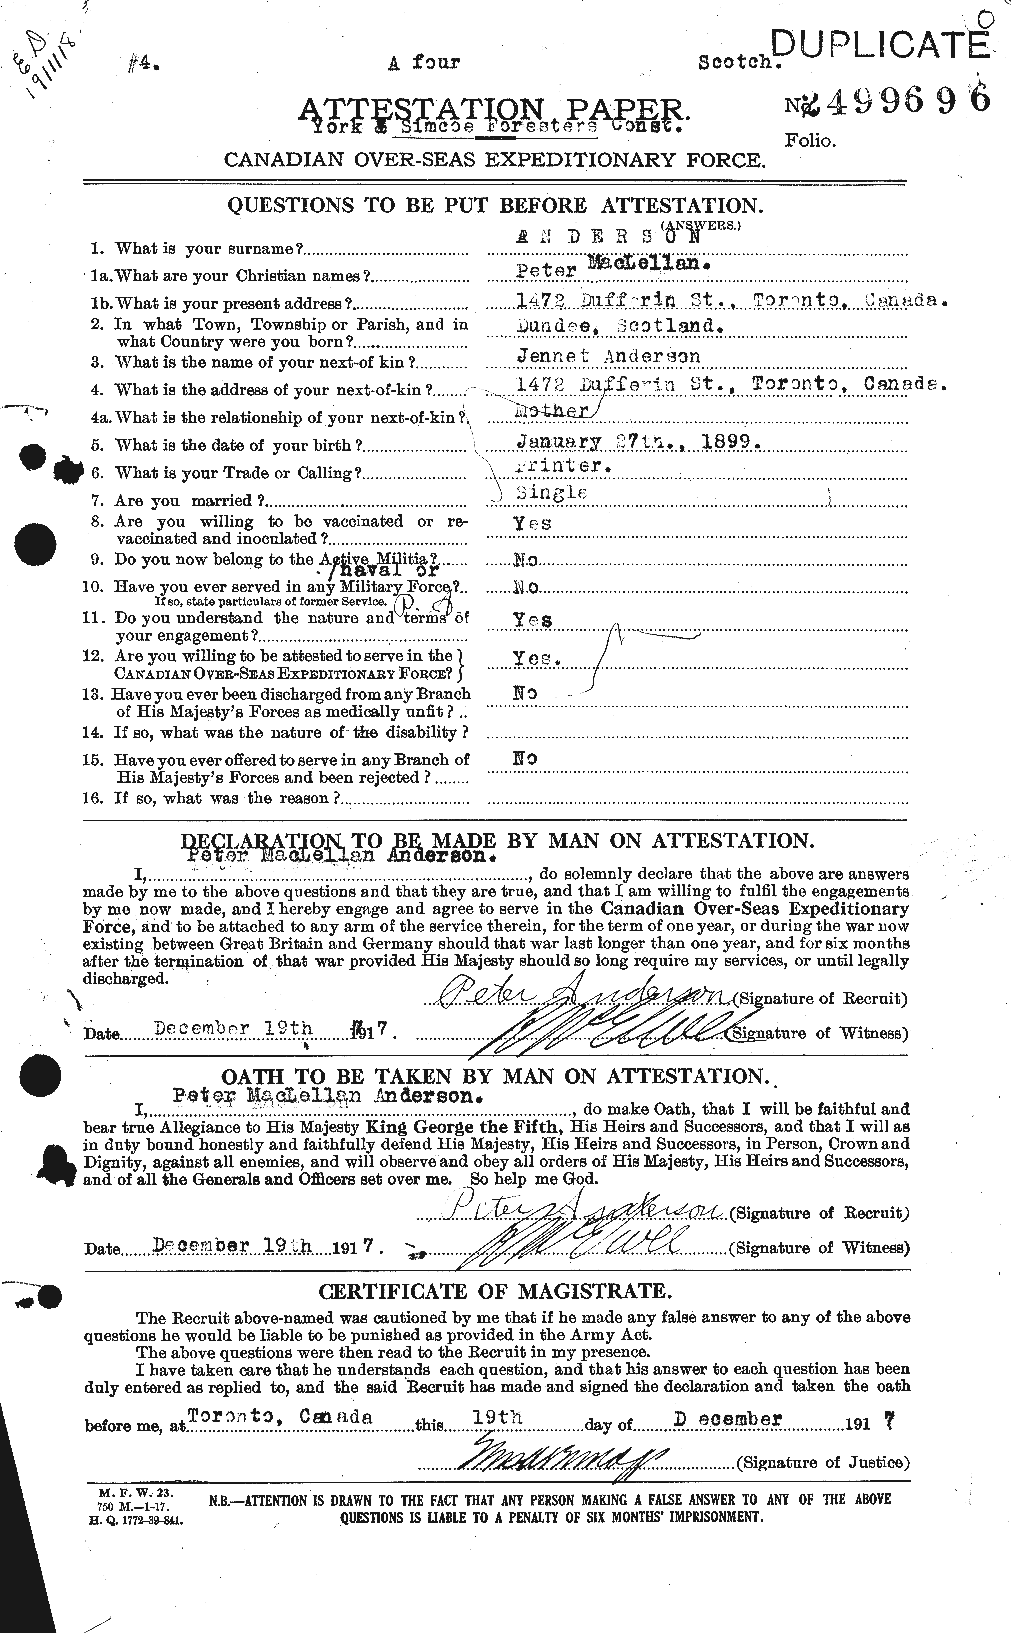 Dossiers du Personnel de la Première Guerre mondiale - CEC 207343a